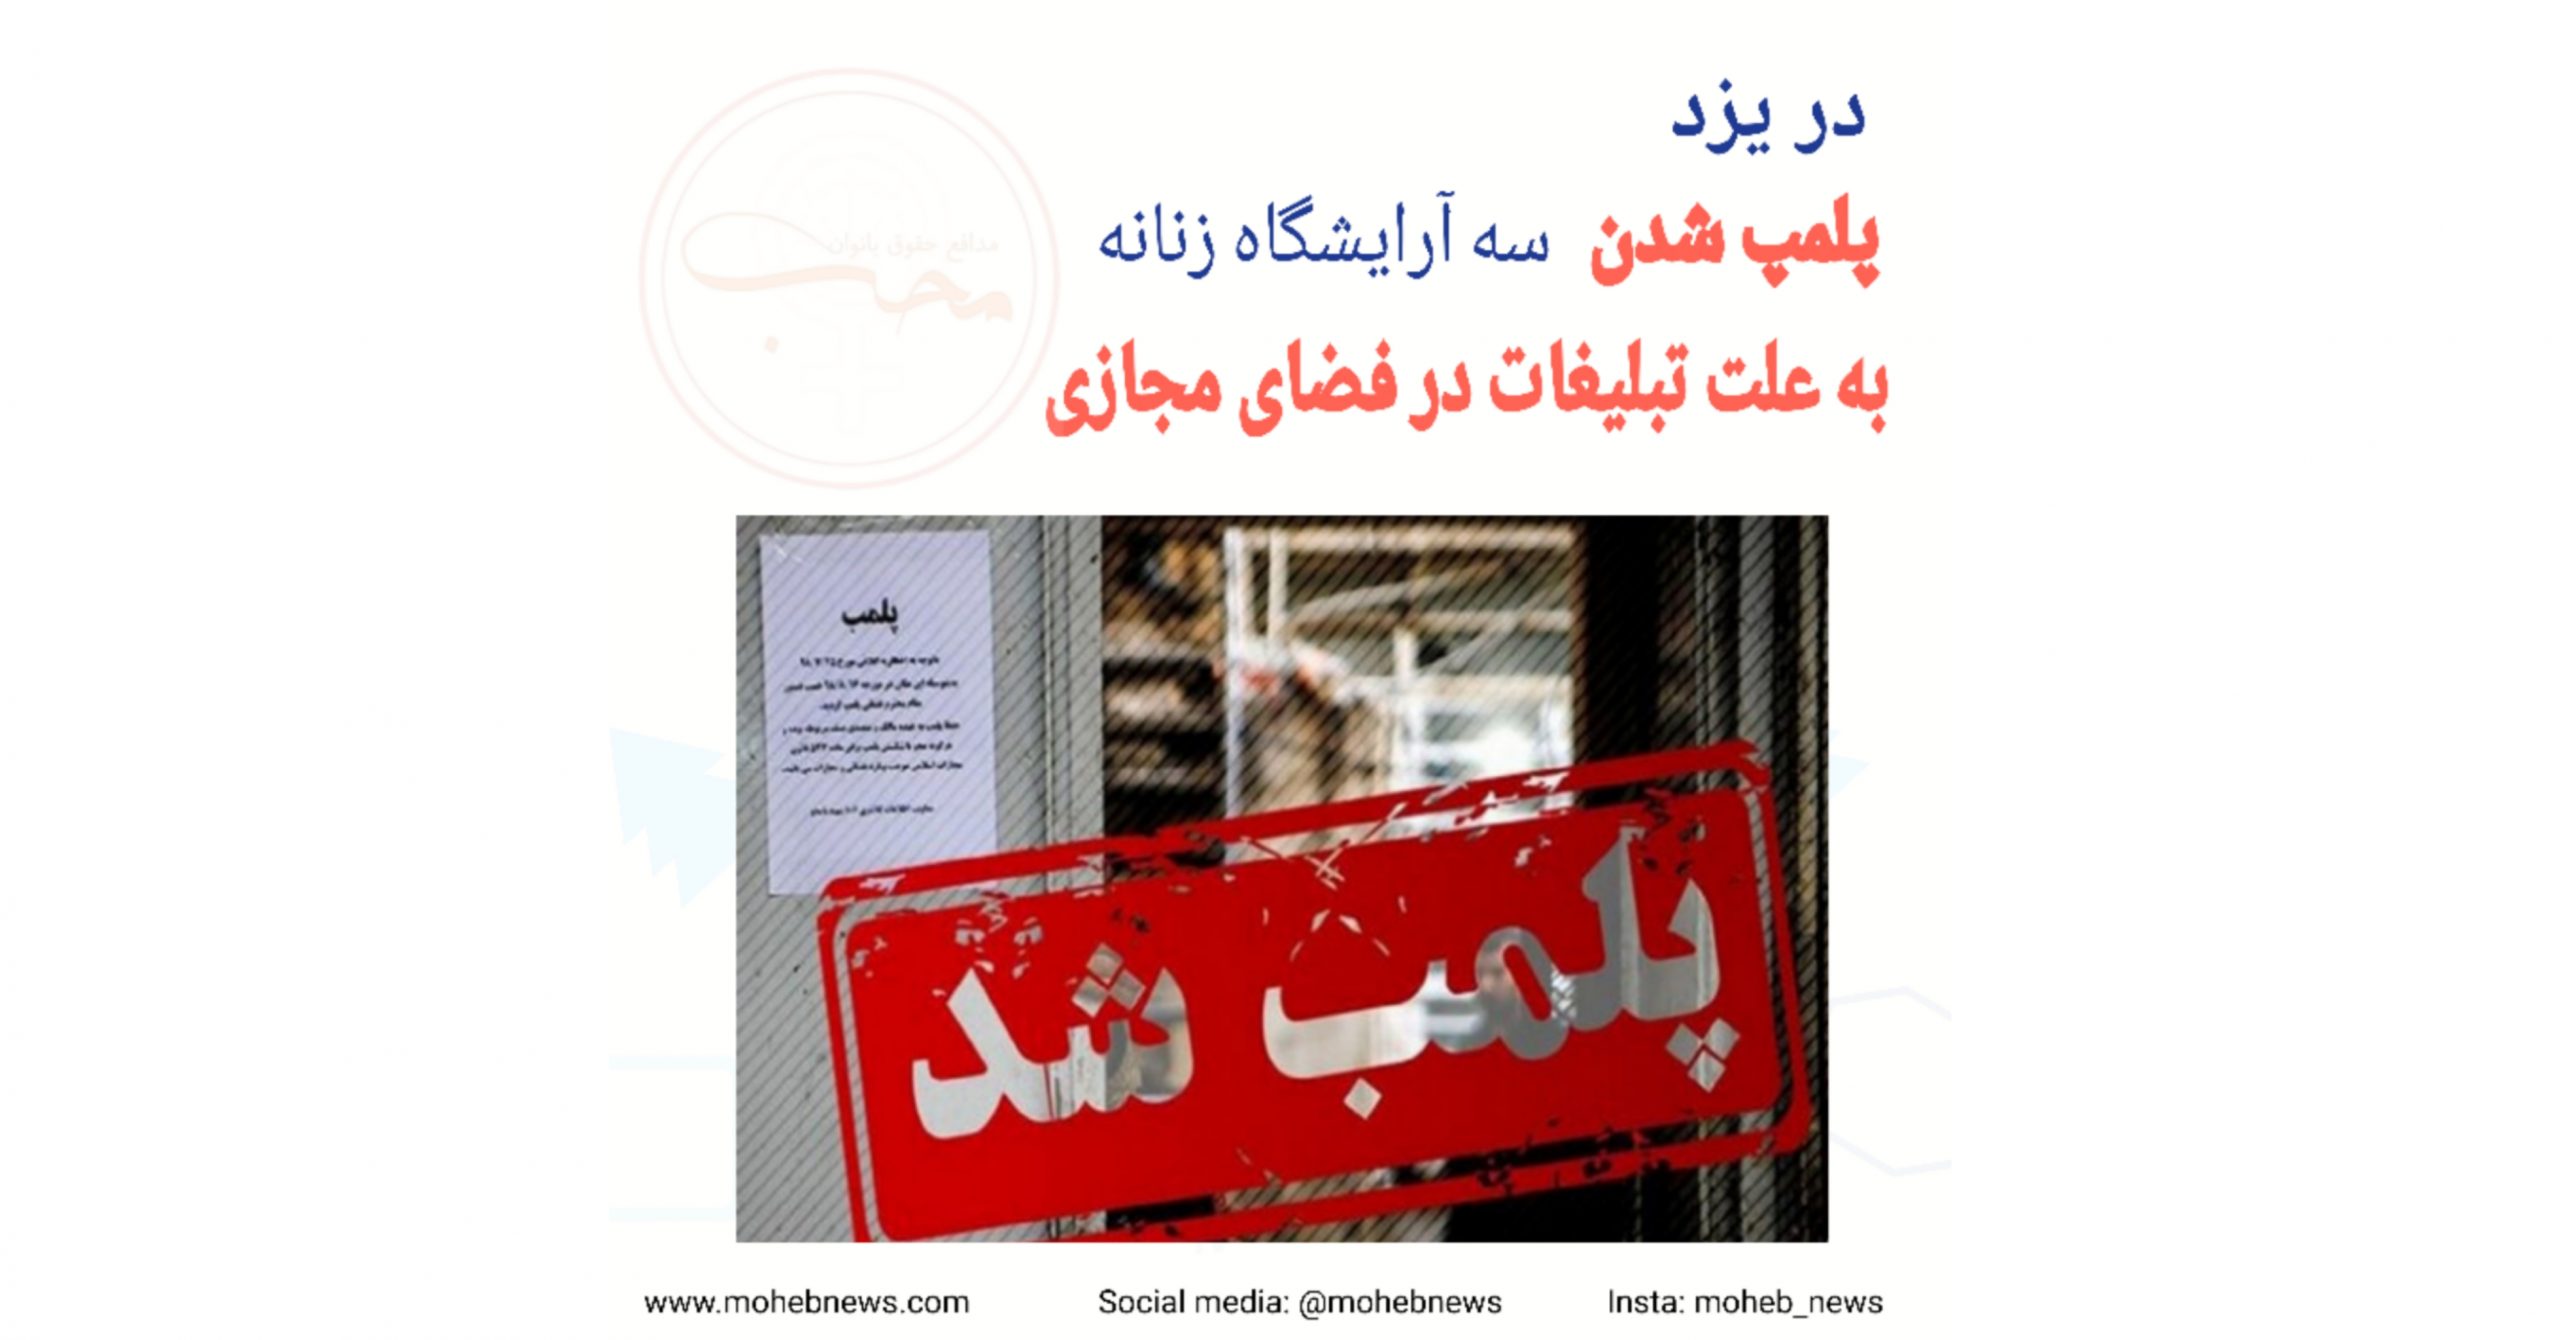 پلمب شدن ۳ آرایشگاه زنانه در یزد به علت تبلیغات در فضای مجازی | محب نیوز